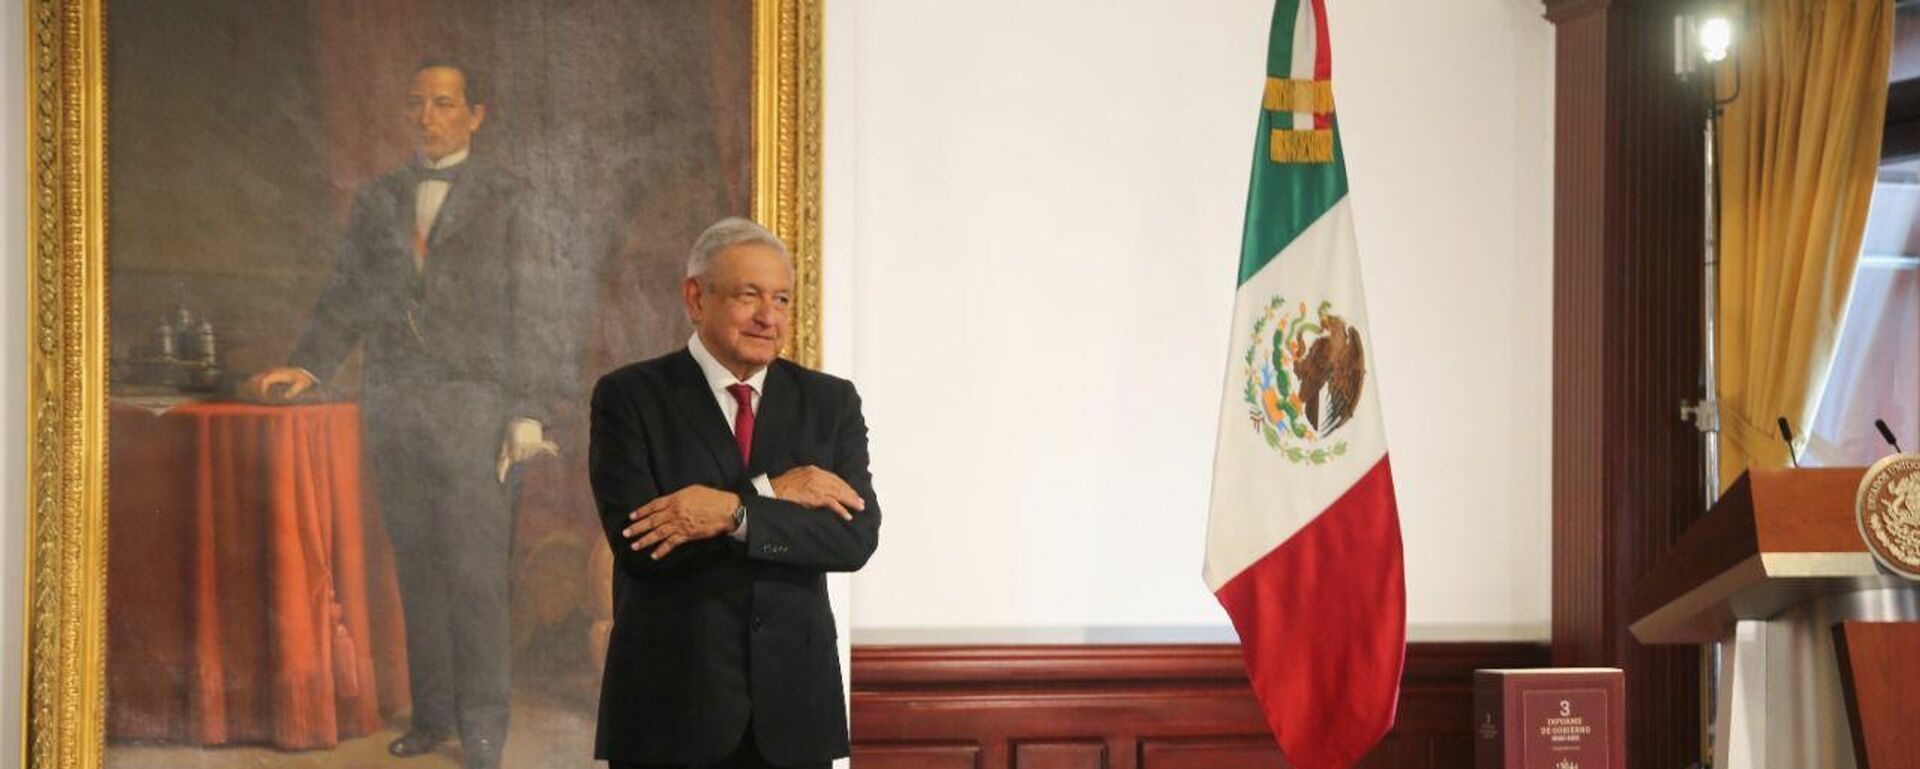 Andrés Manuel López Obrador, presidente de México - Sputnik Mundo, 1920, 01.09.2021